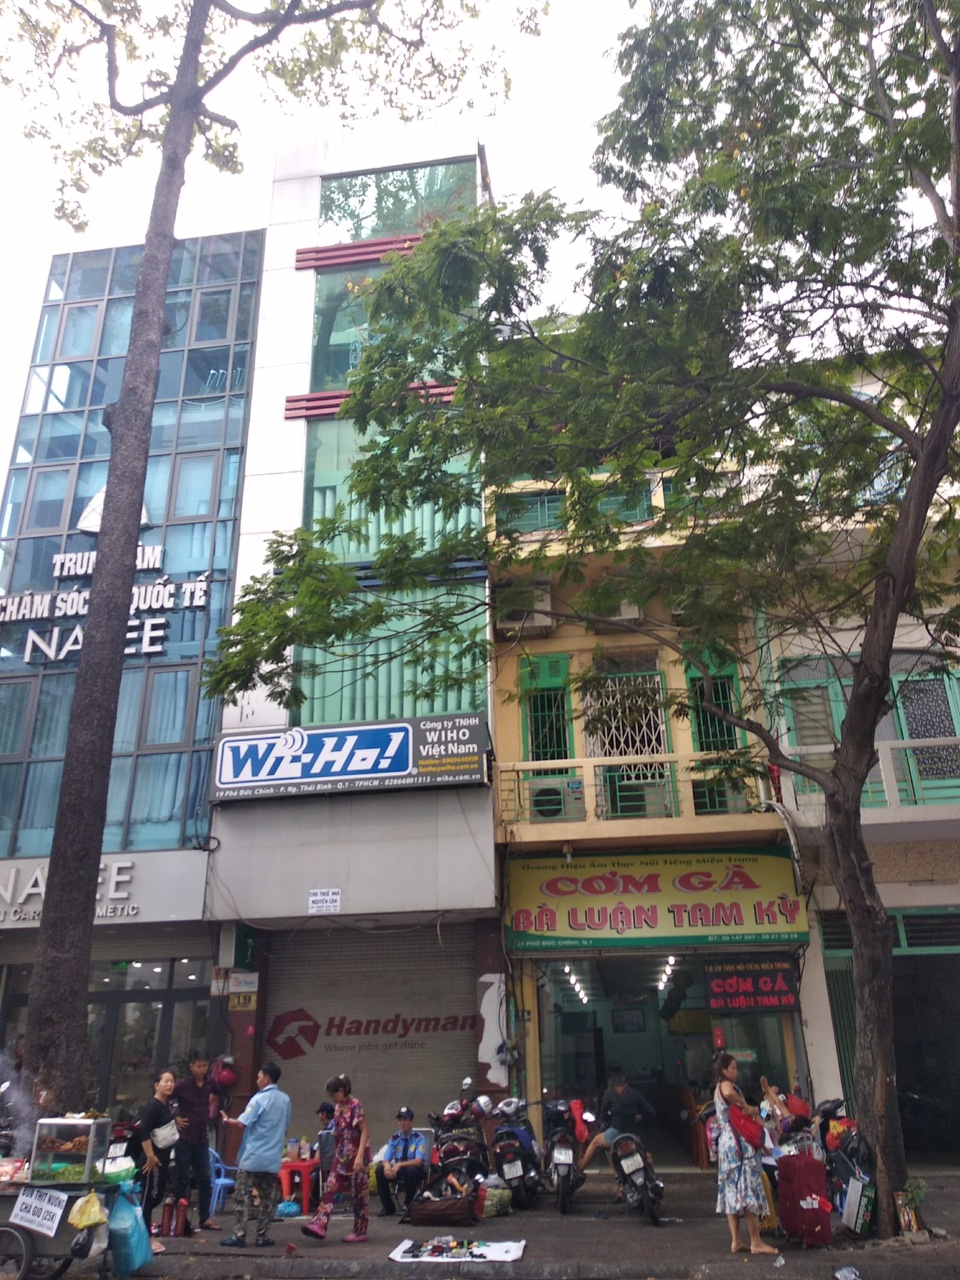 Chính chủ bán gấp nhà mặt tiền đường Nguyễn Khắc Nhu, Quận 1, 4x18m, 4 lầu, mới xây rất đẹp, giá rẻ chỉ 28 tỷ